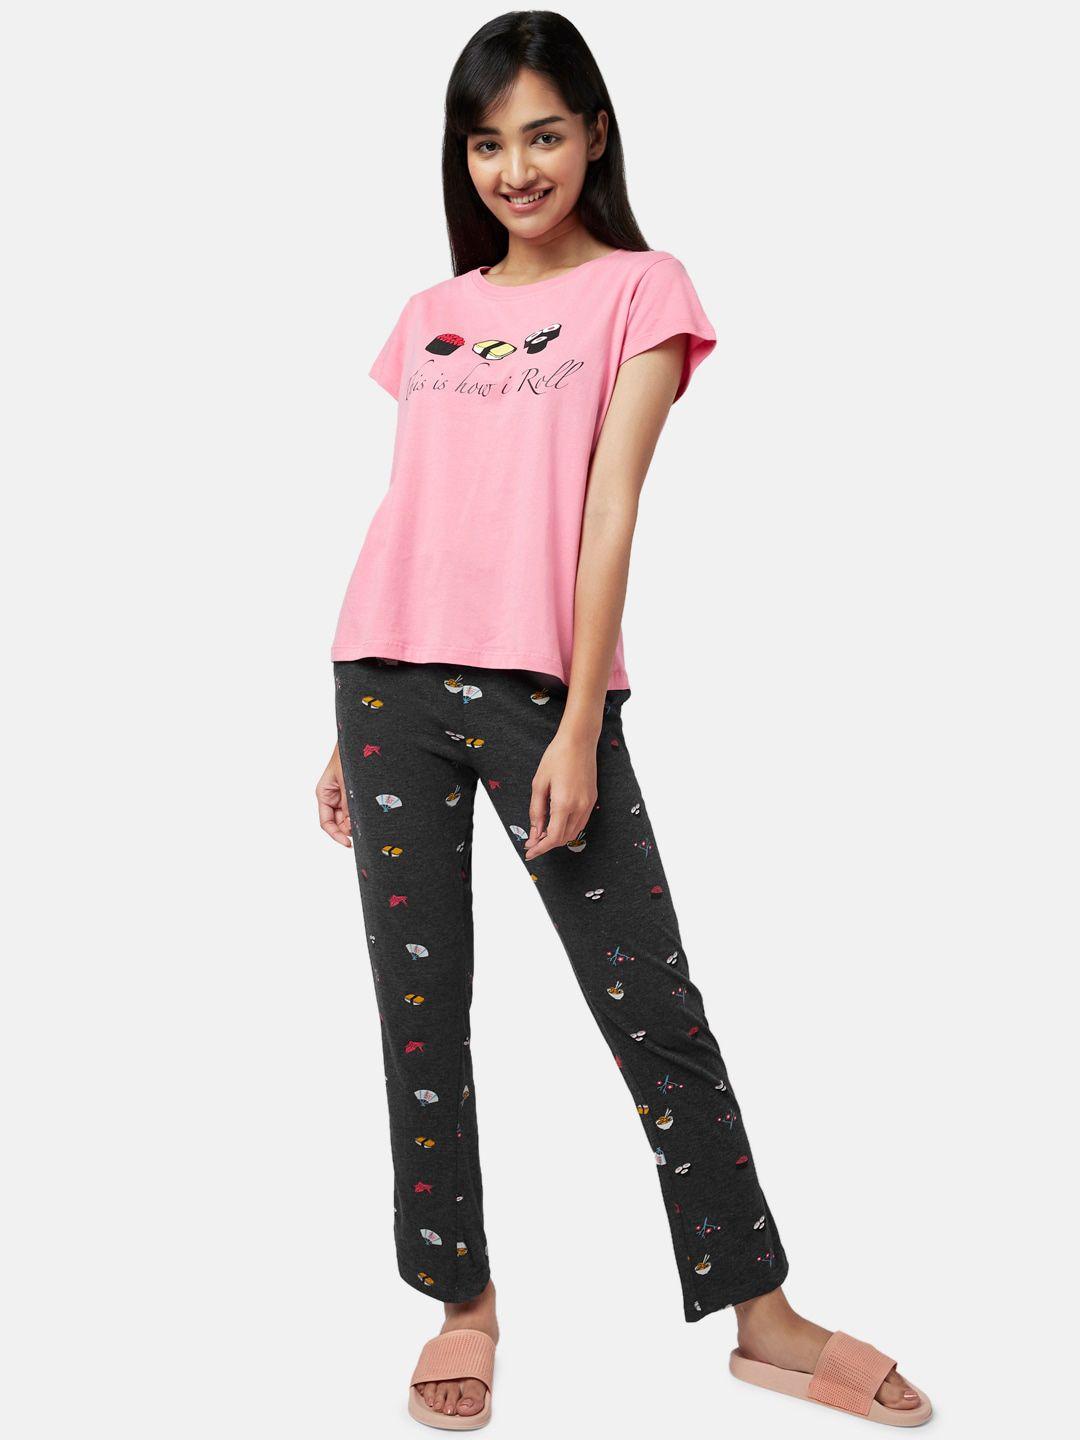 yu by pantaloons women pink printed night suit